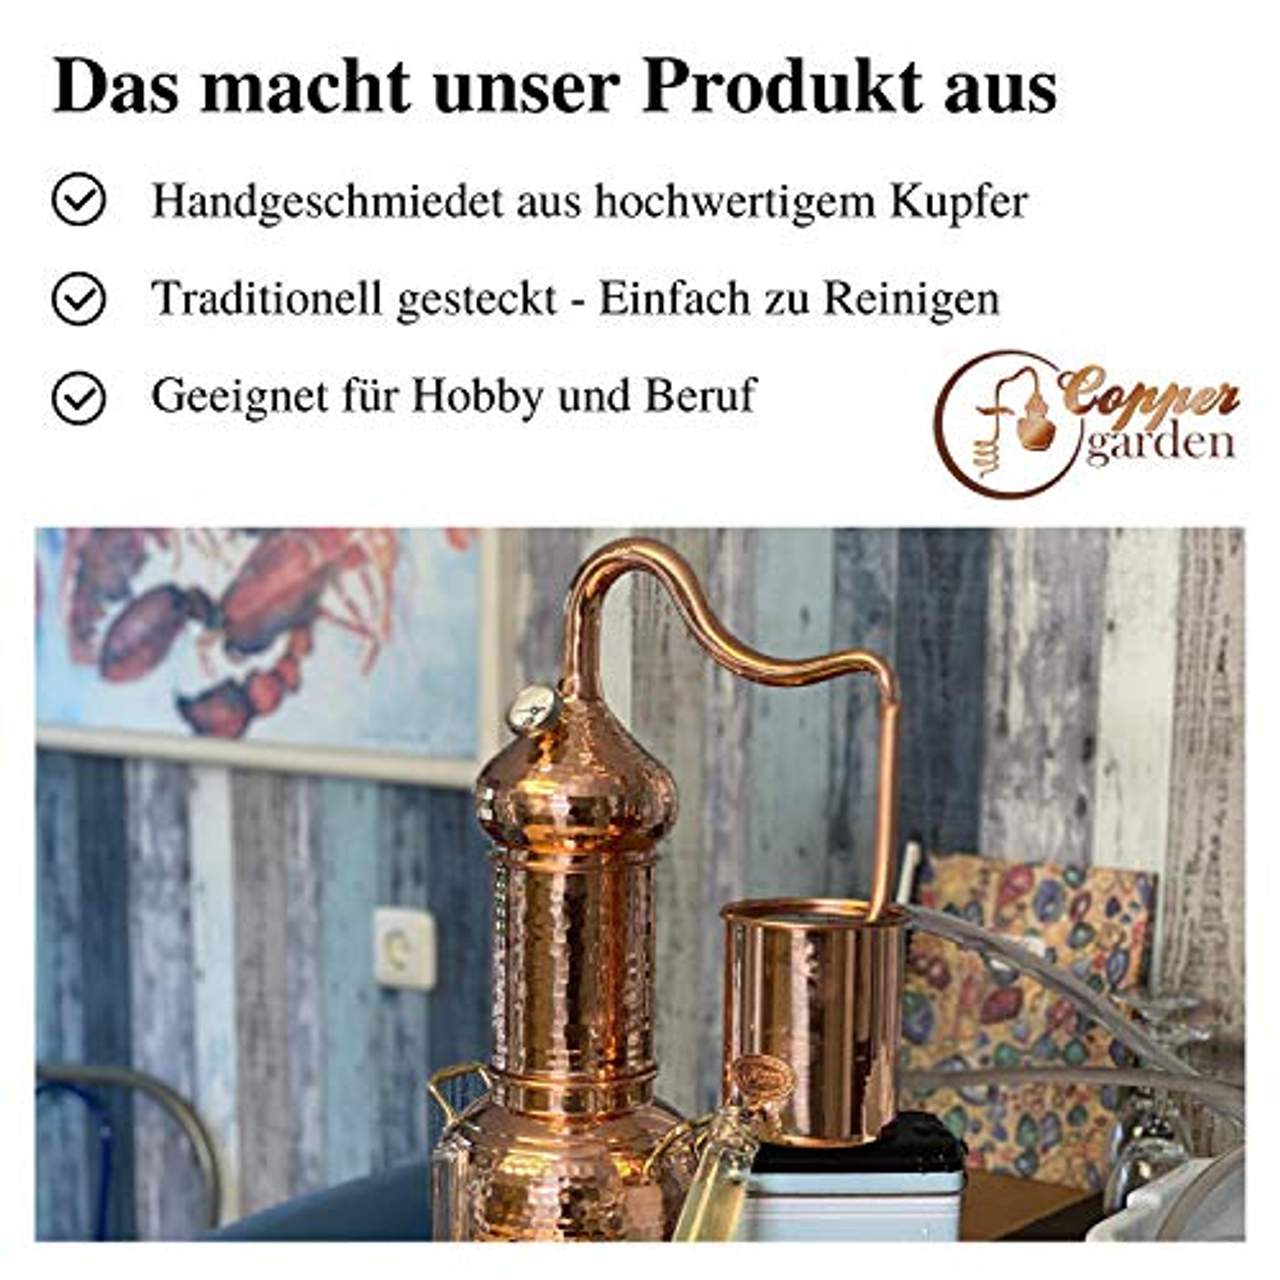 CopperGarden Destille Essence Plus 2 Liter Kolonnenbrennerei